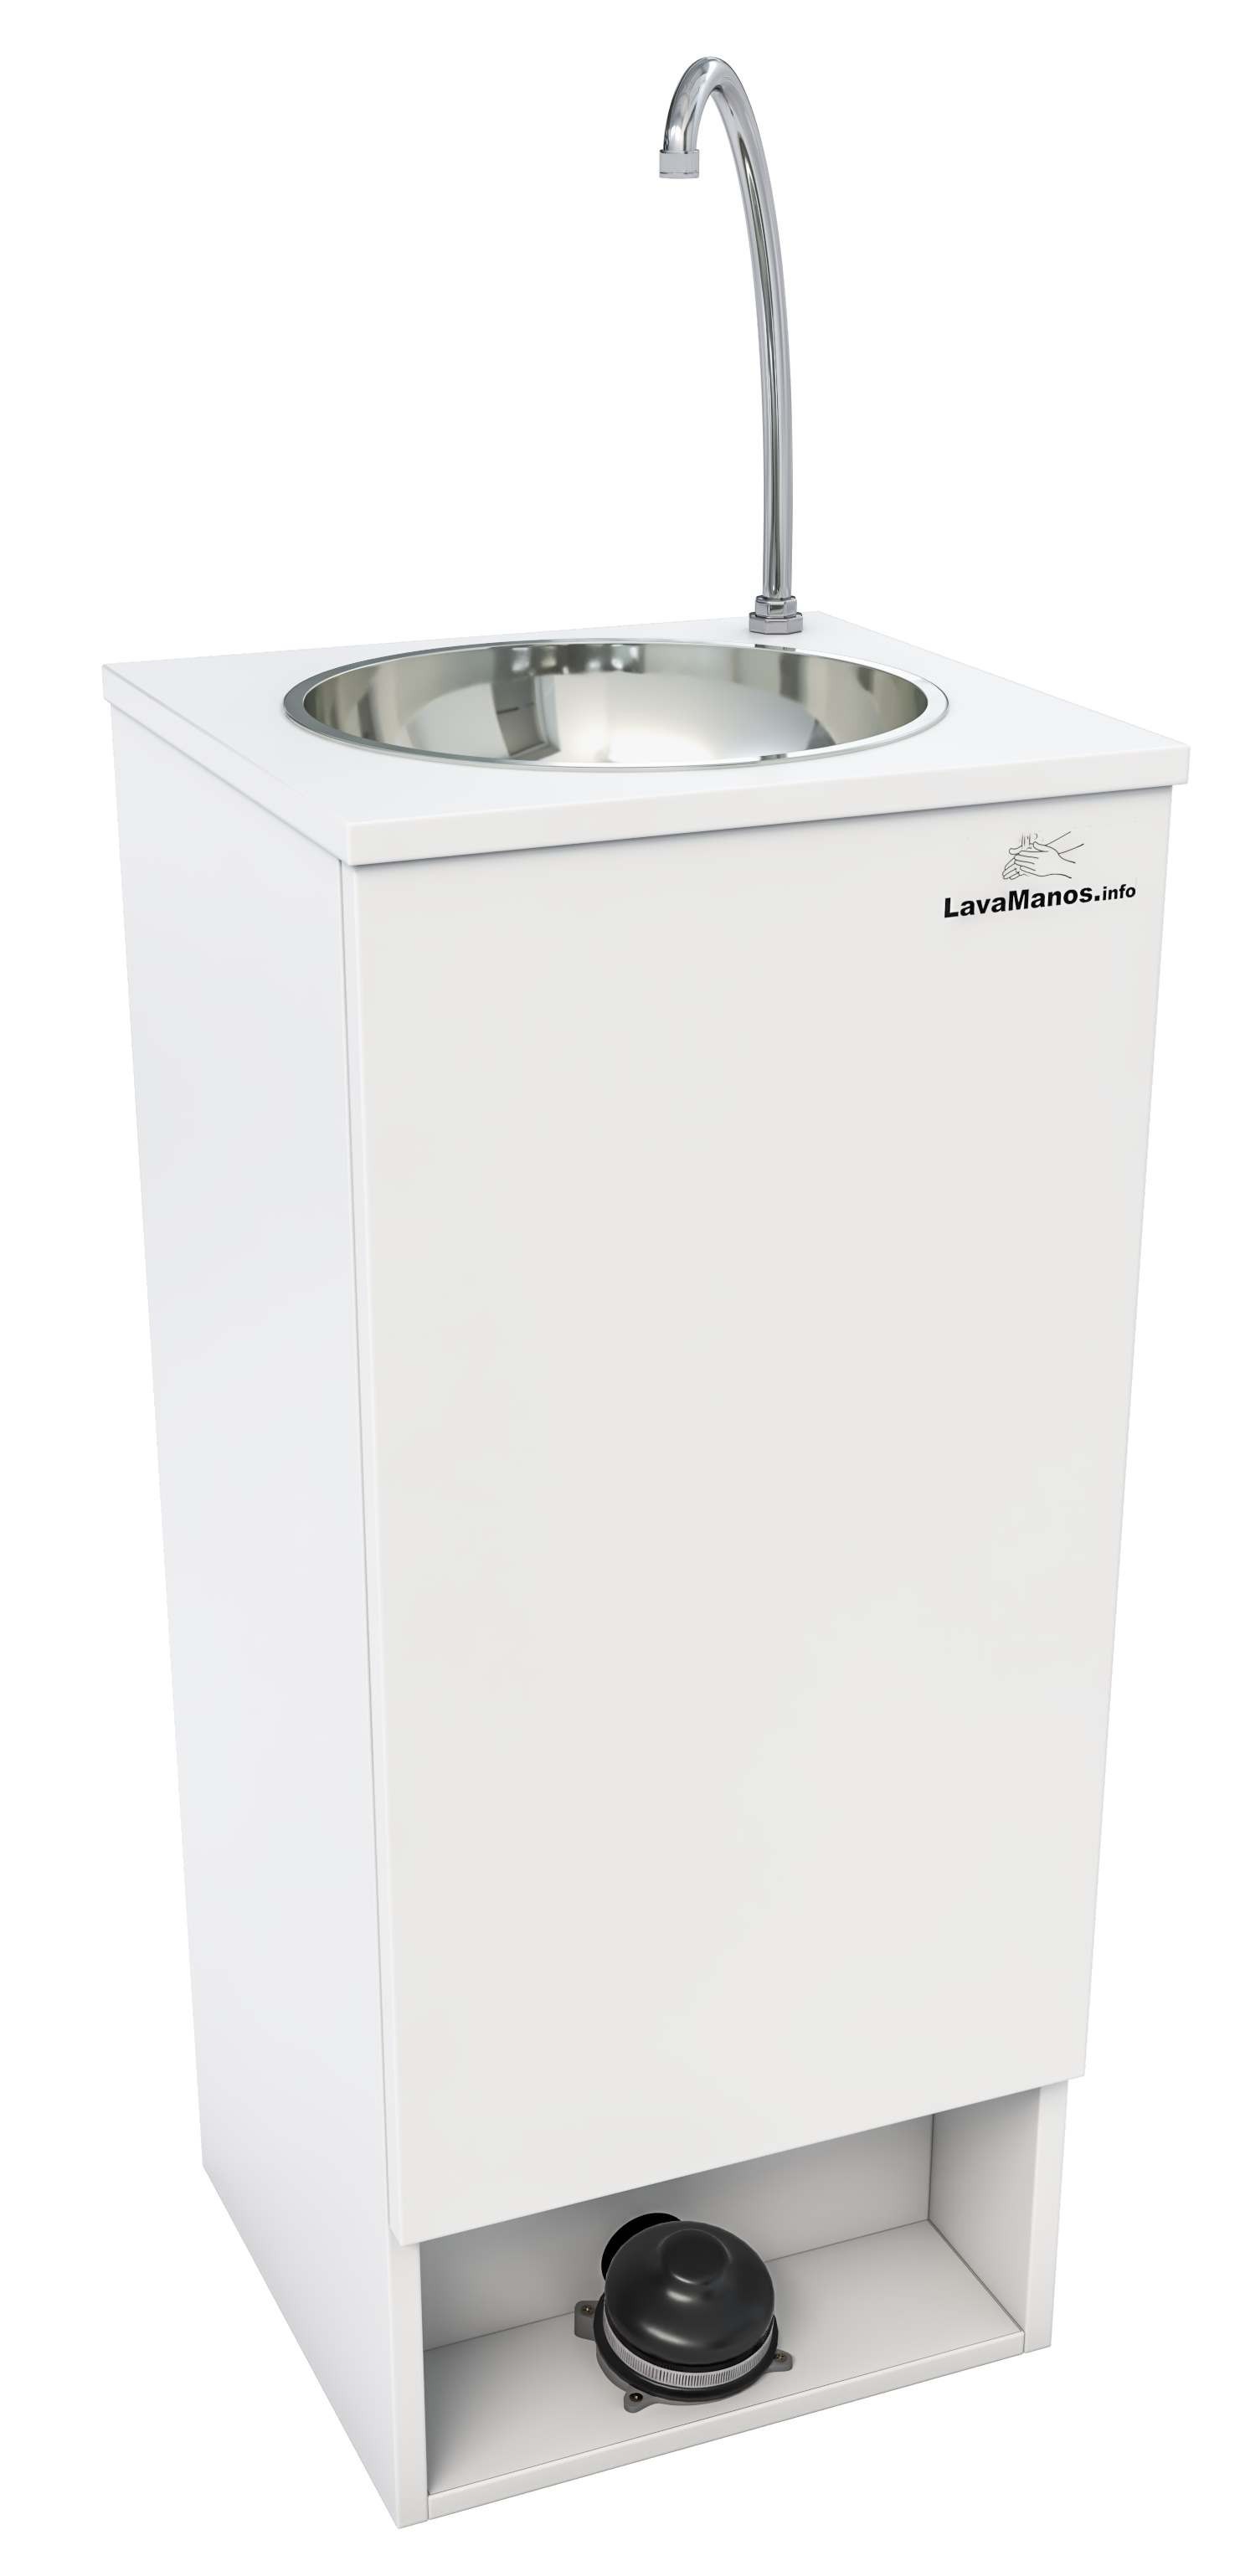 Lavabo portátil para baño/almacén/cocina, hospital/centro  comercial/inodoro/lavabo de servicio de fregona escolar se puede instalar  fácilmente en